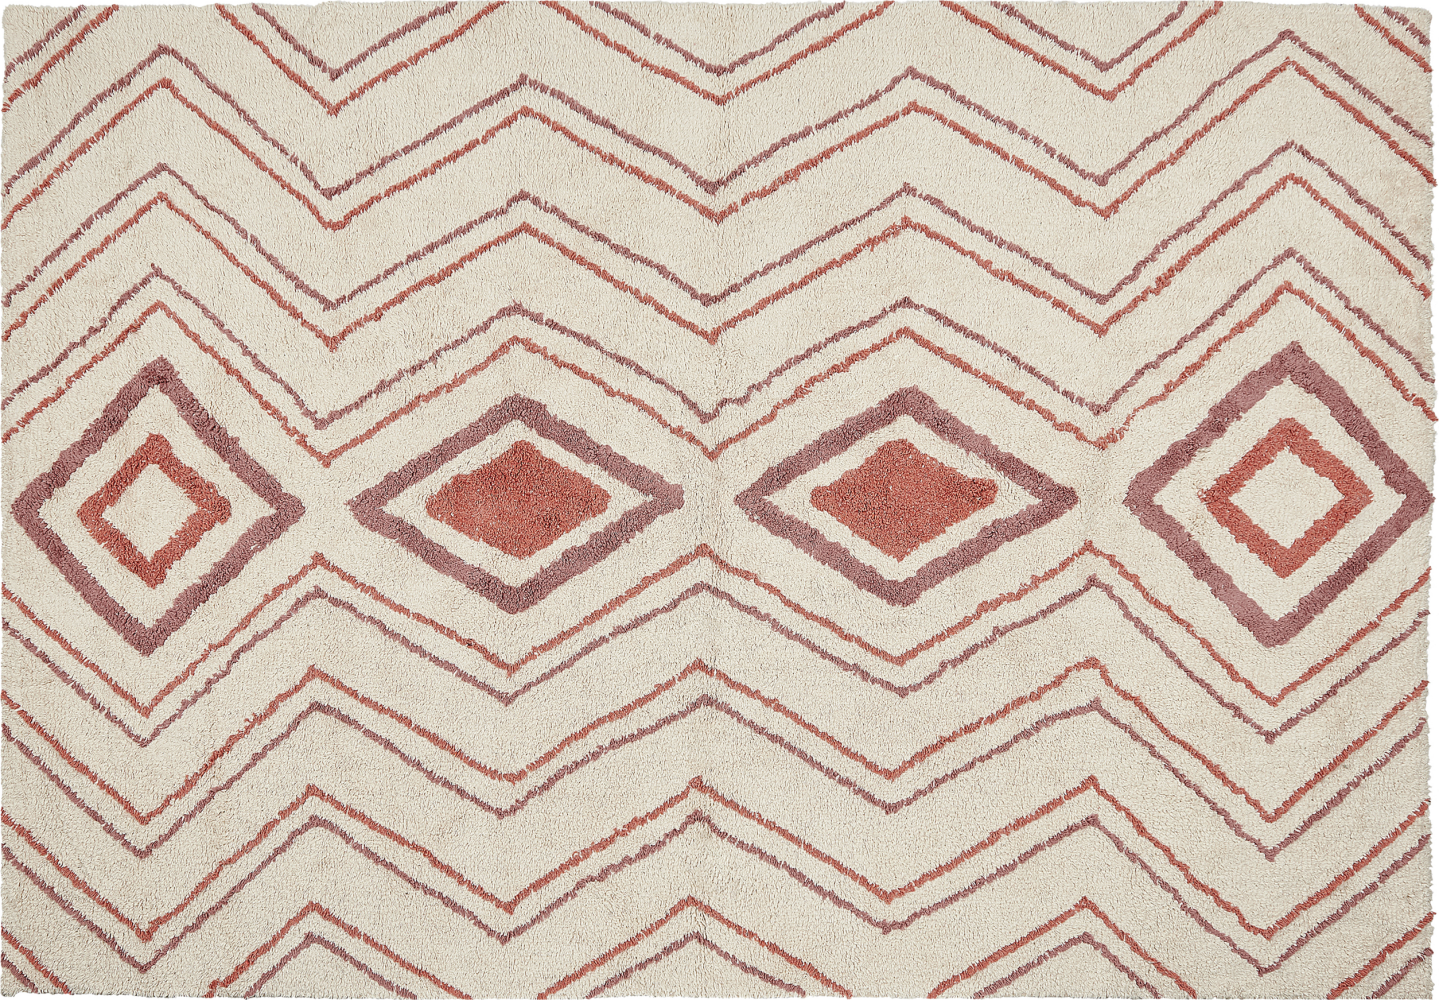 Teppich Baumwolle beige rosa 160 x 230 cm geometrisches Muster KASTAMONU Bild 1